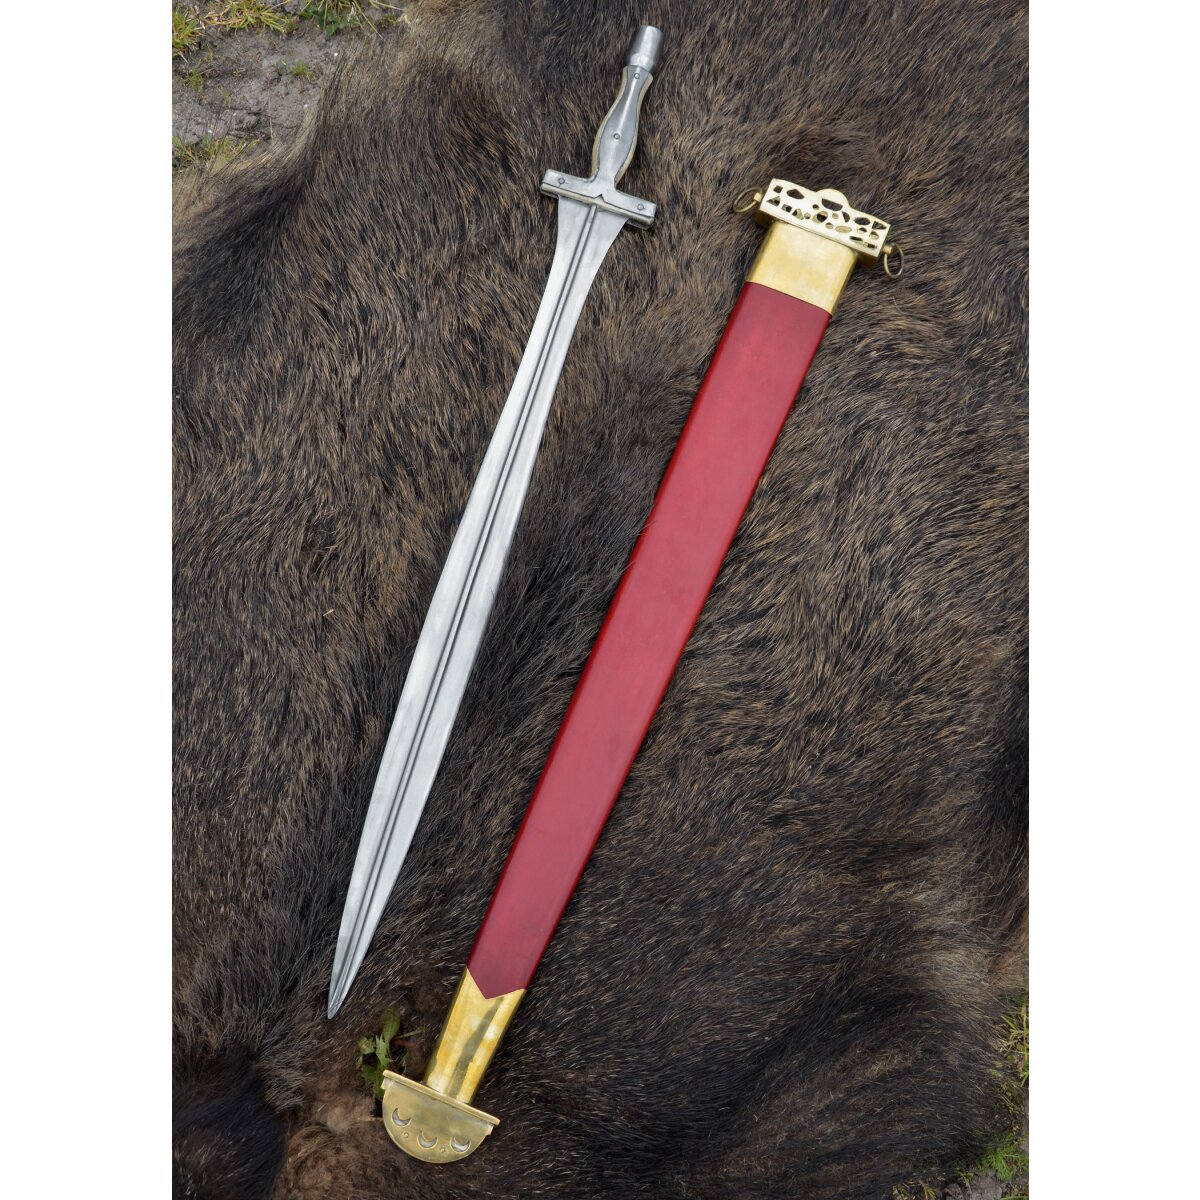 Griechisches Schwert aus Alfedena, mit Knochengriff